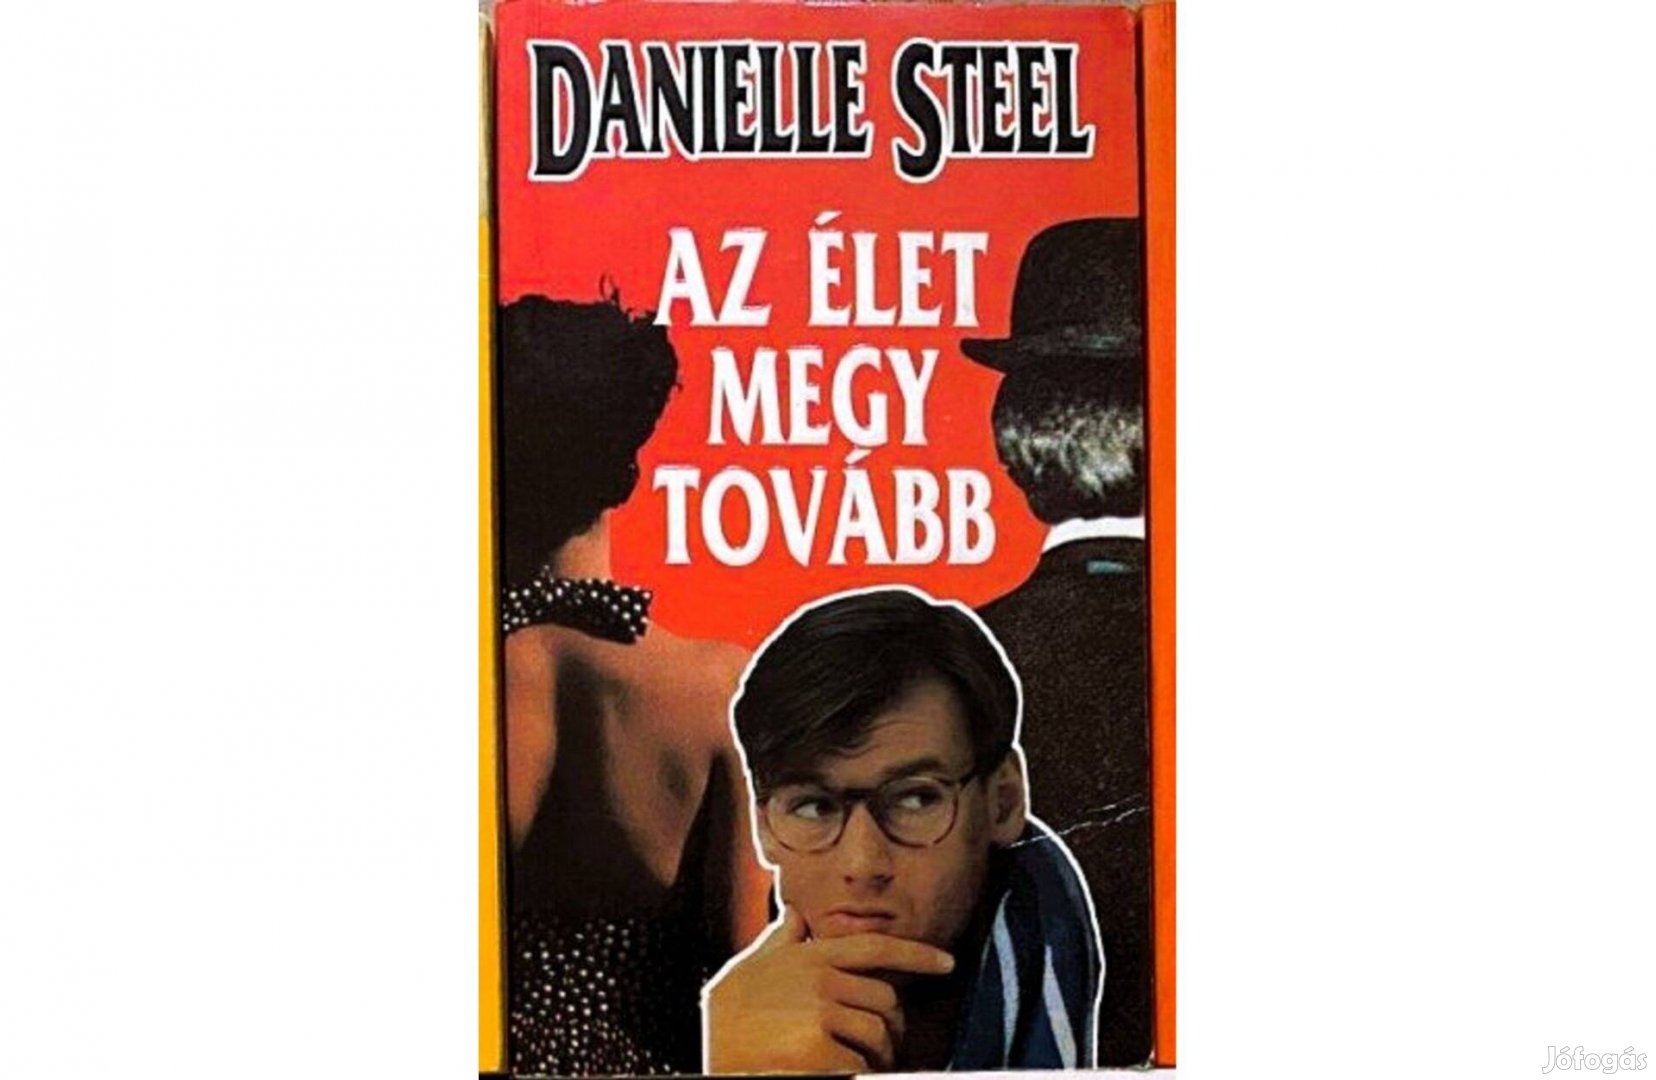 Danielle Steel könyvcsomag 5 db 500 Ft/db = 2500 Ft